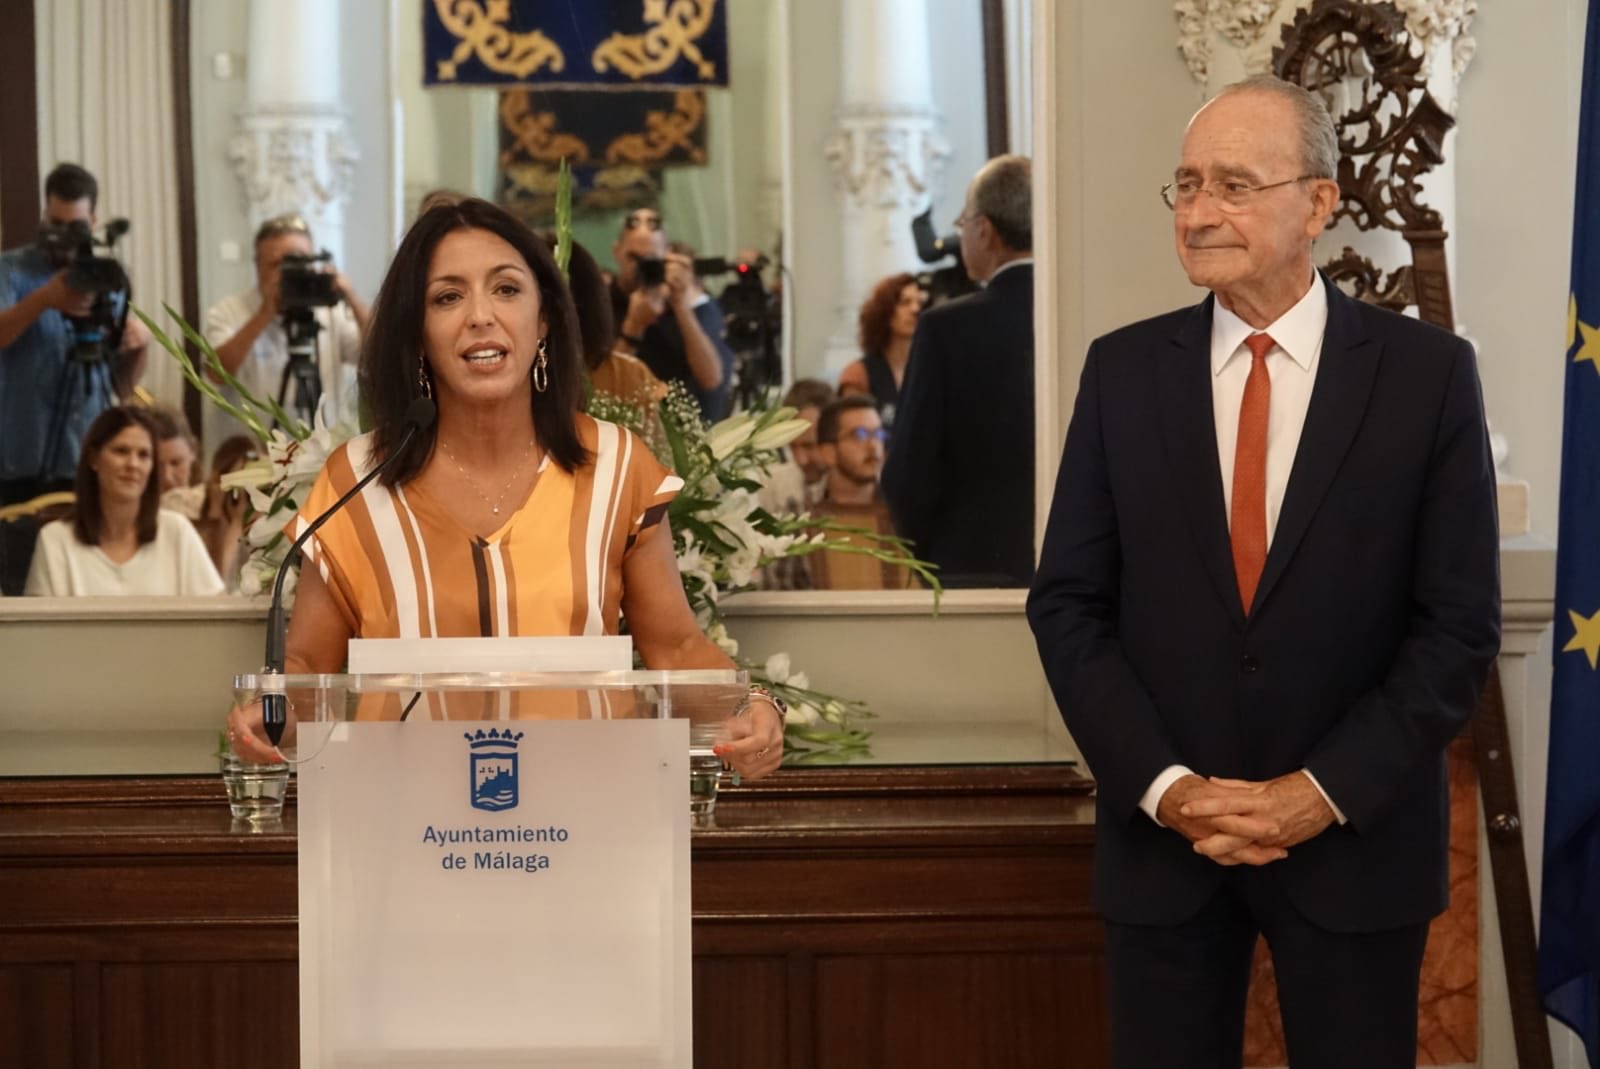  La presidenta del Parlamento, Marta Bosquet, atiende a los medios de comunicacin acompaada por el alcalde de Mlaga, Francisco de la Torre